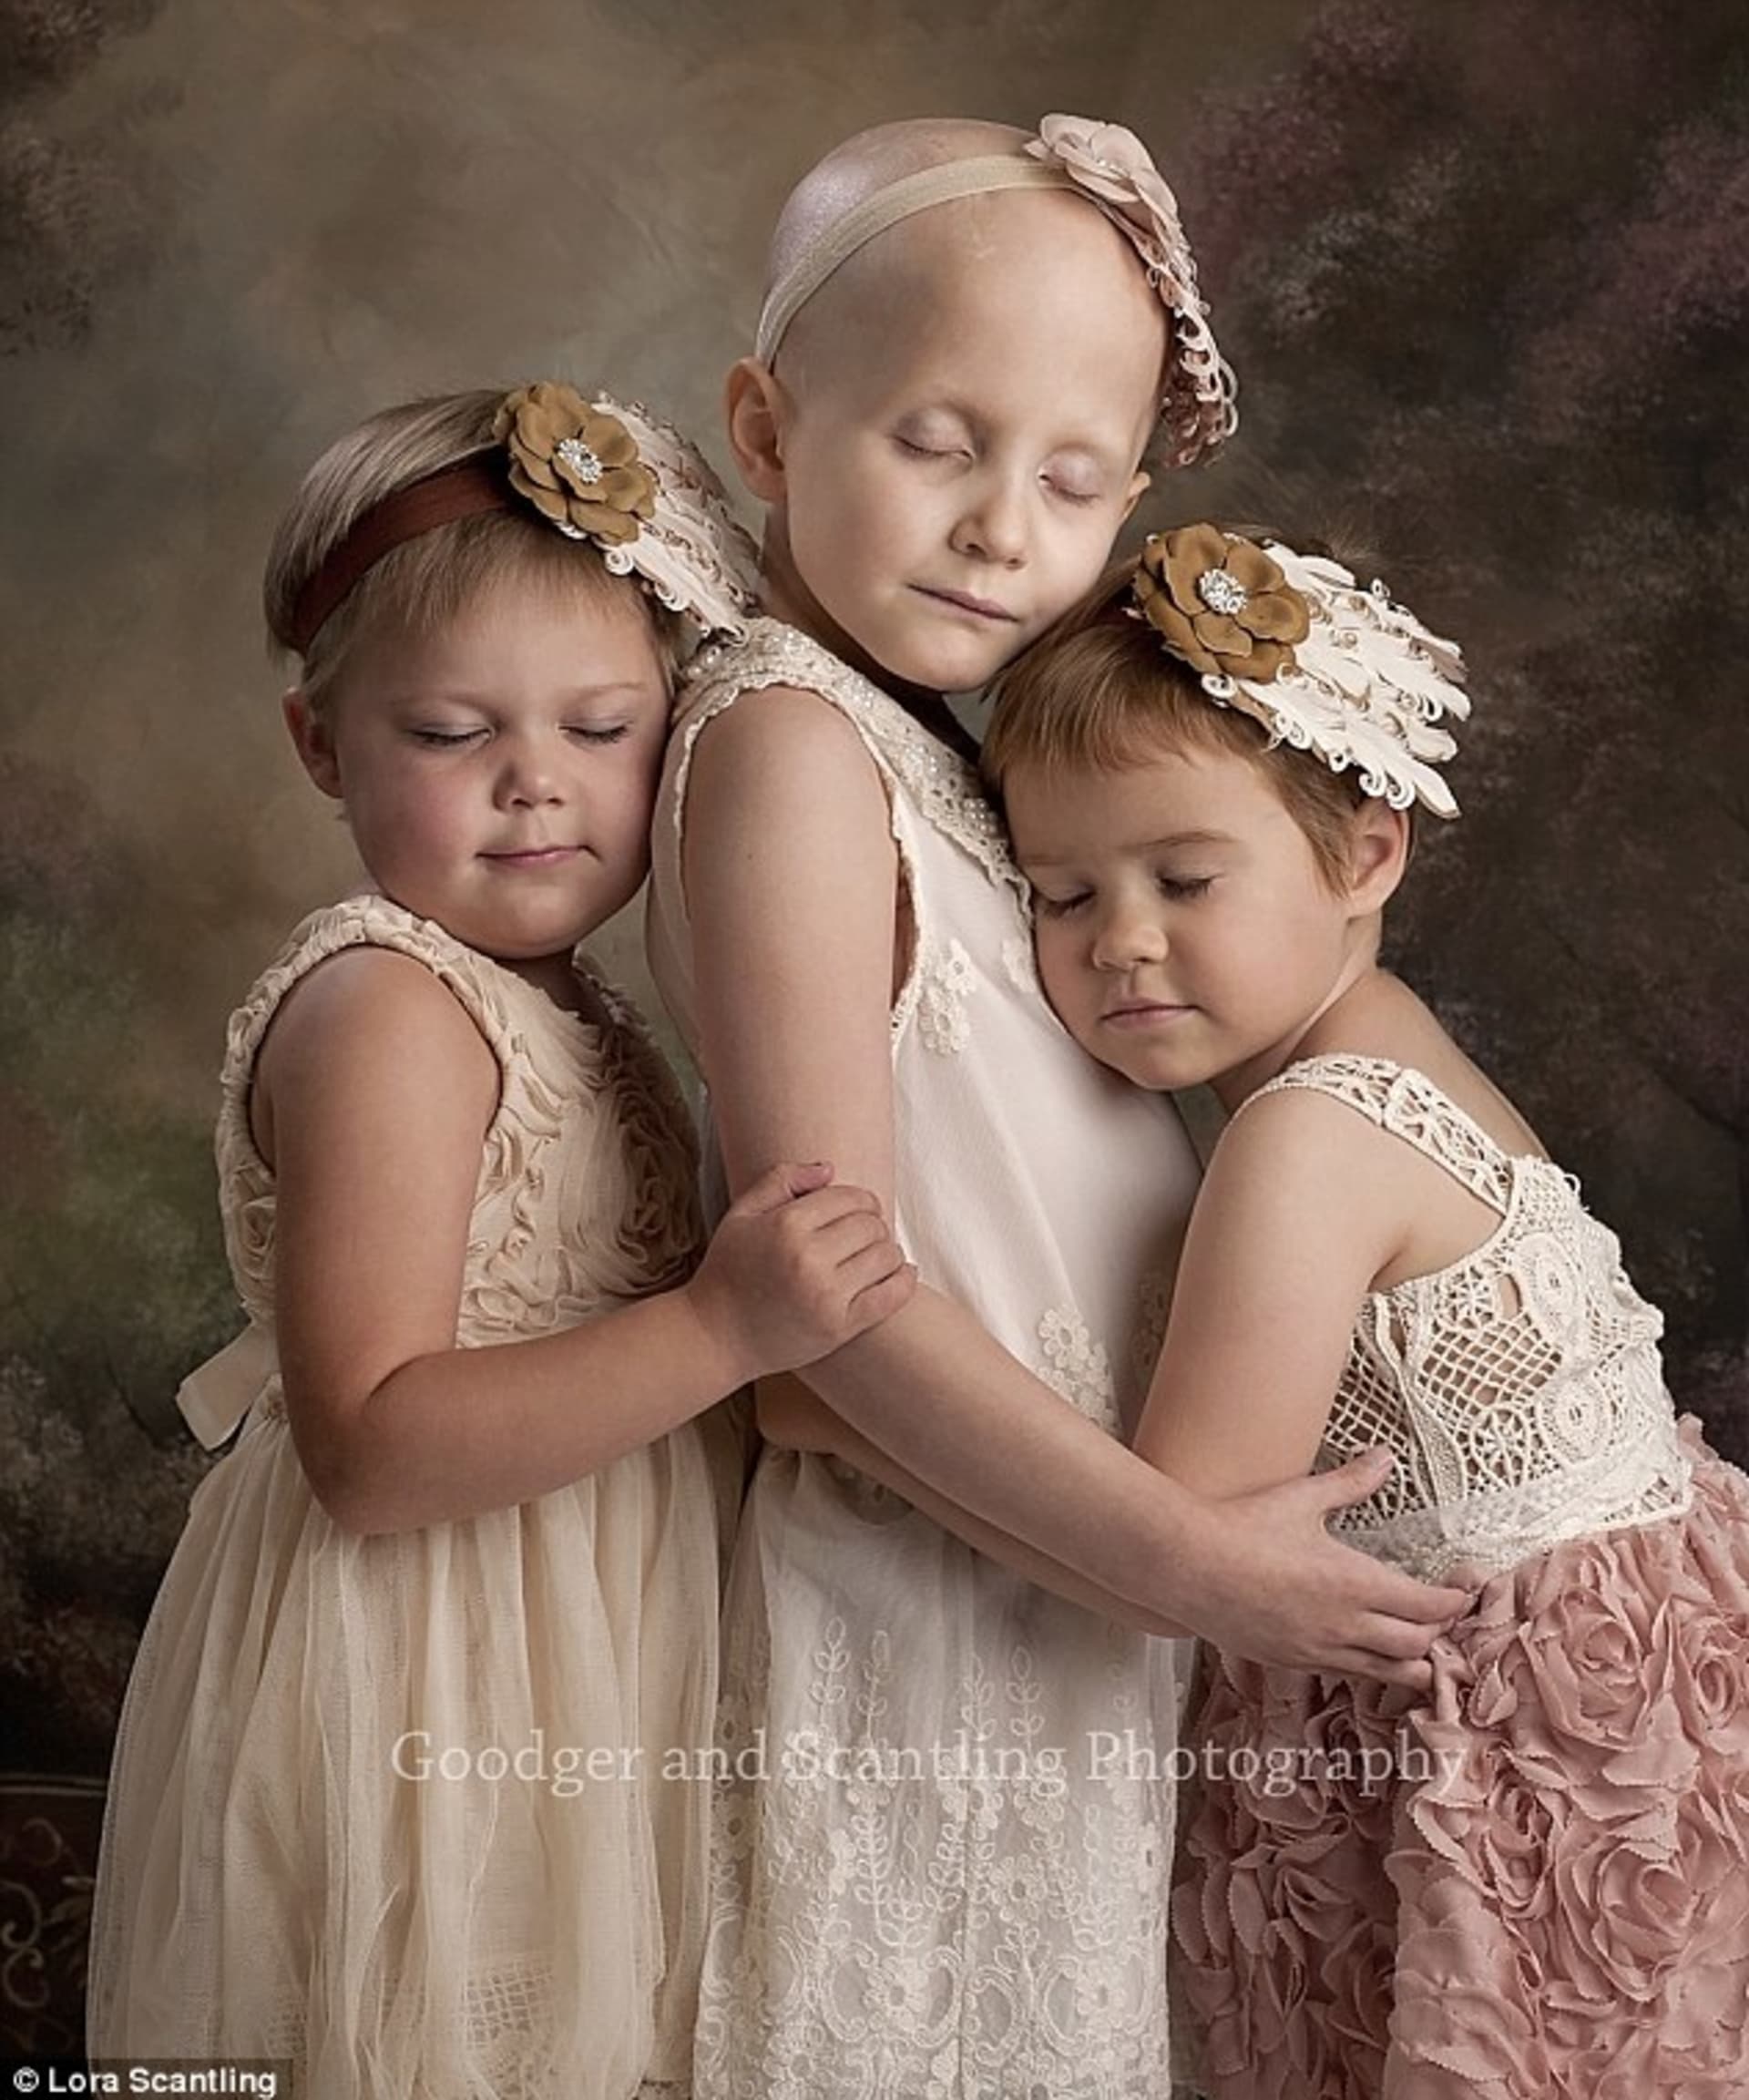 Tato fotka třech andílků obletěla na začátku roku svět. Holčičky bojovaly s rakovinou.